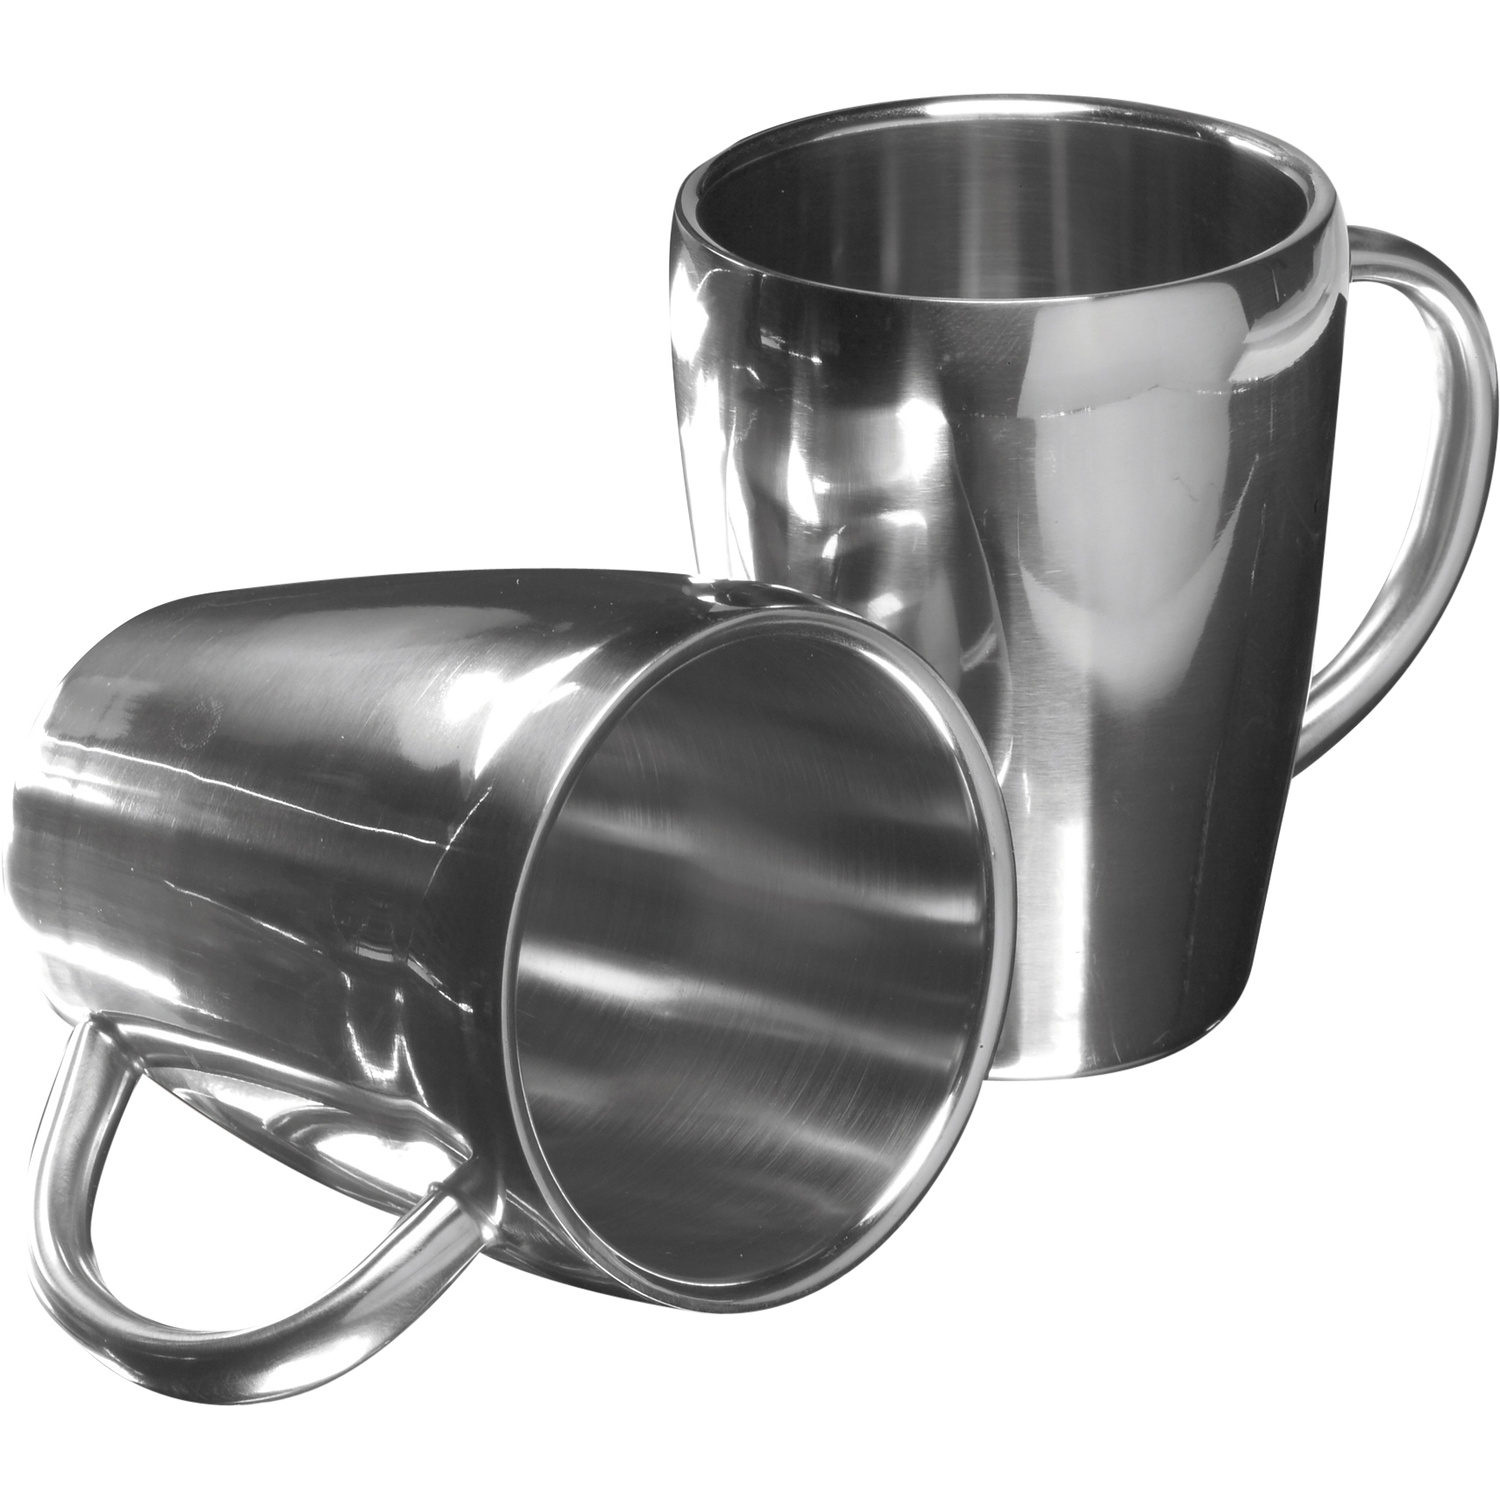 004665 032999999 3d090 ovr pro01 fal - Set of two steel mugs